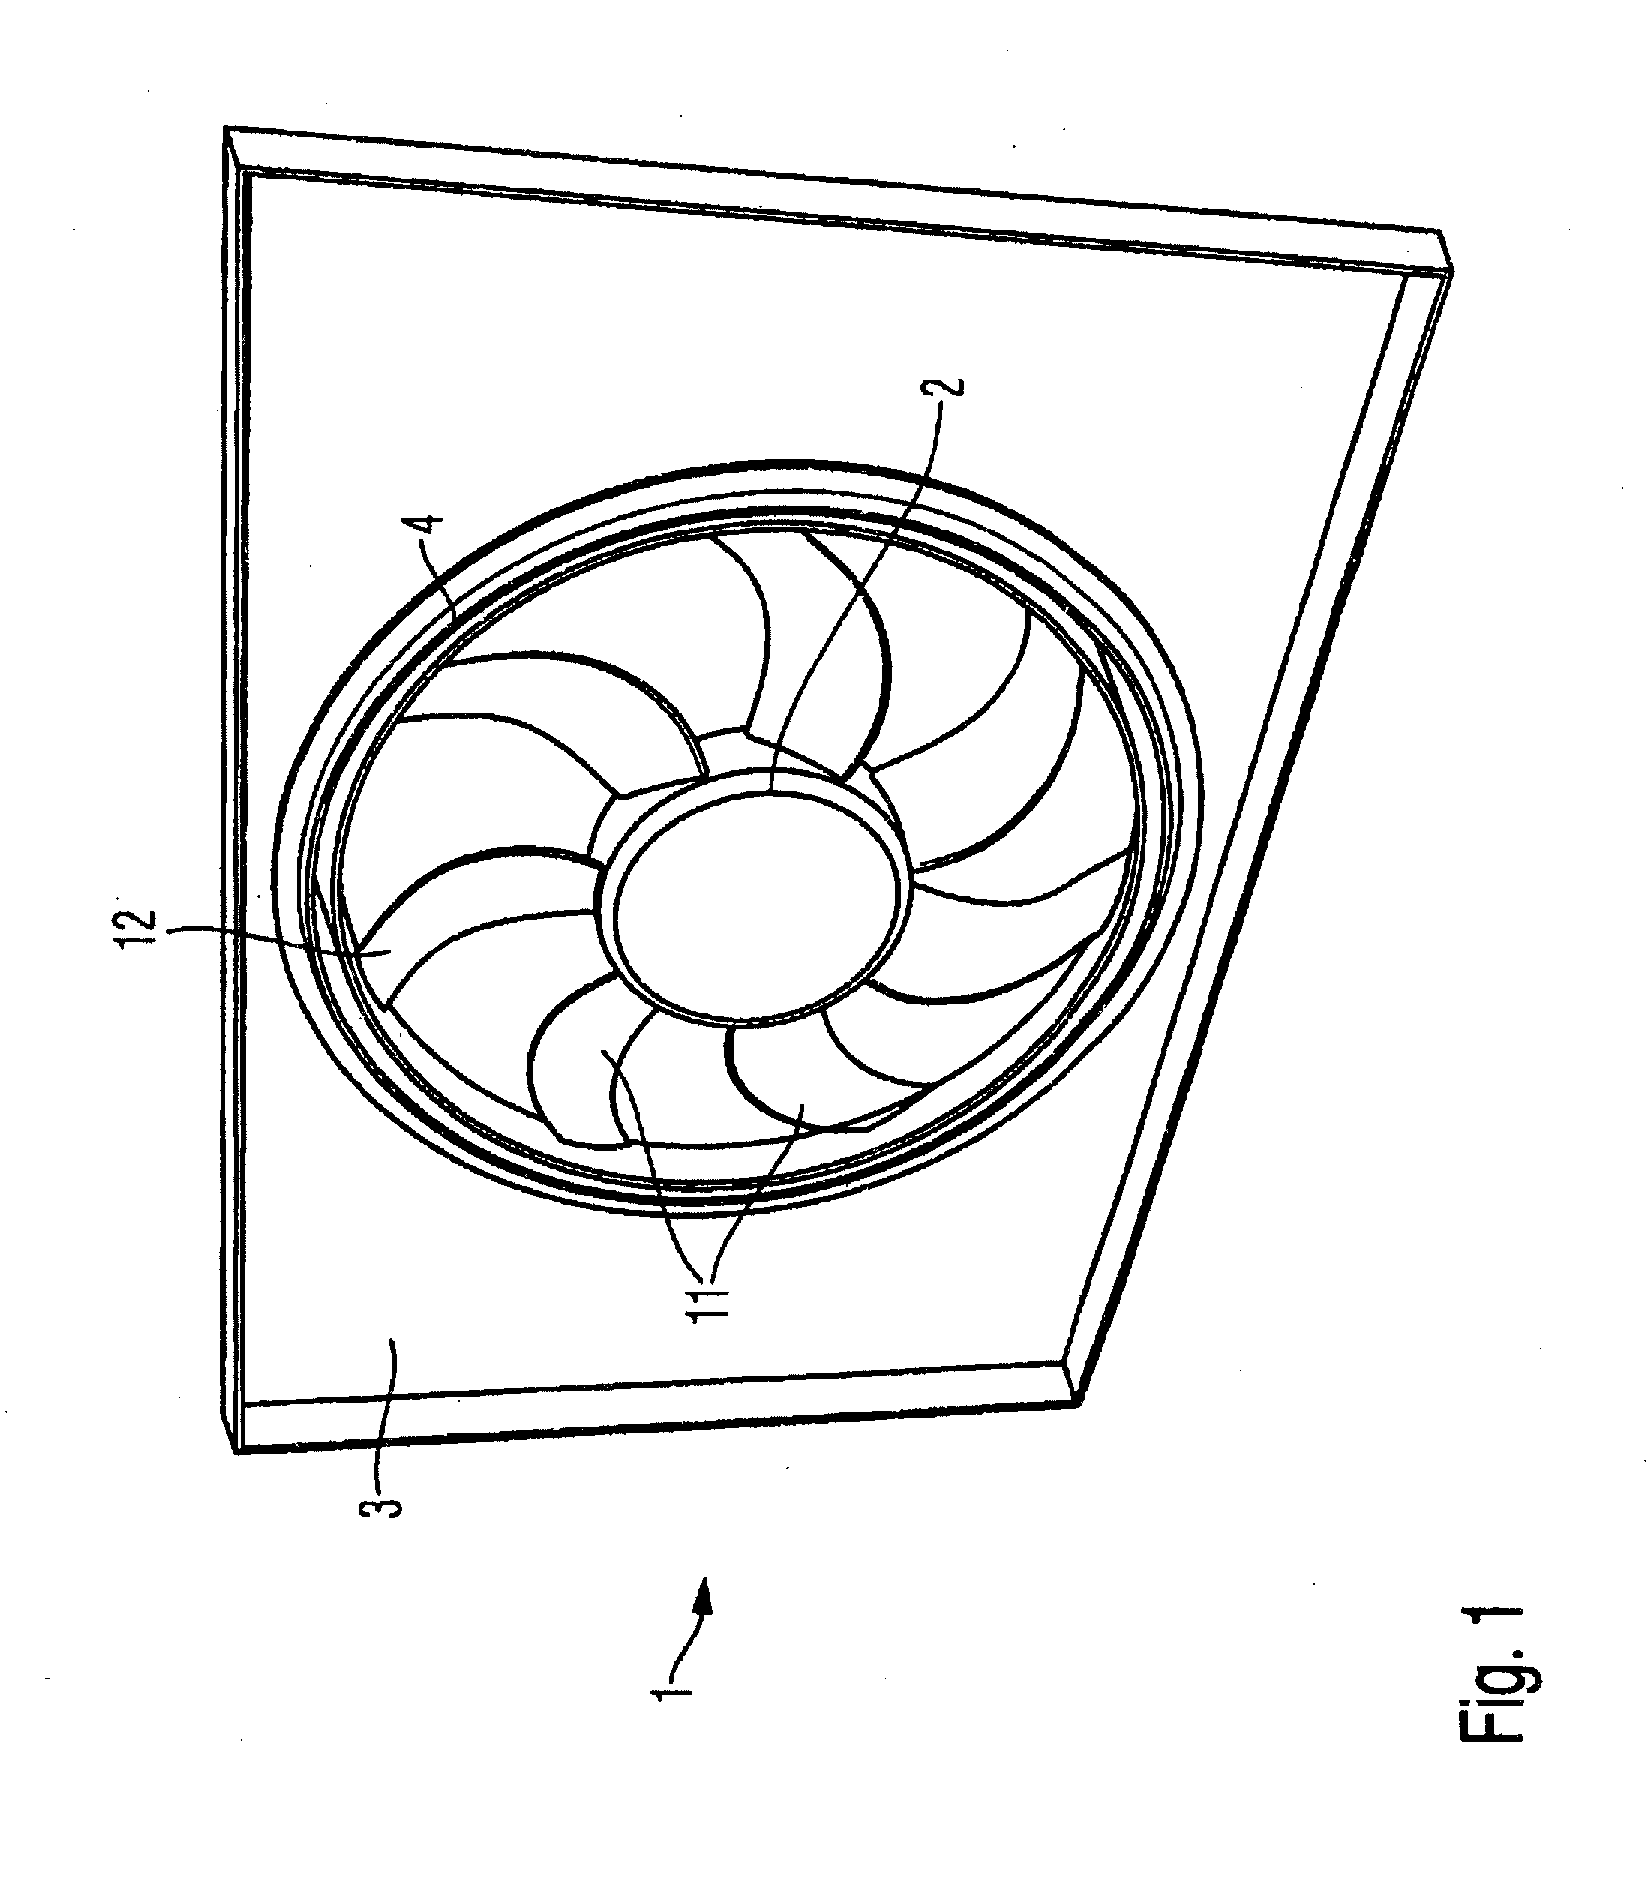 Cooling fan module